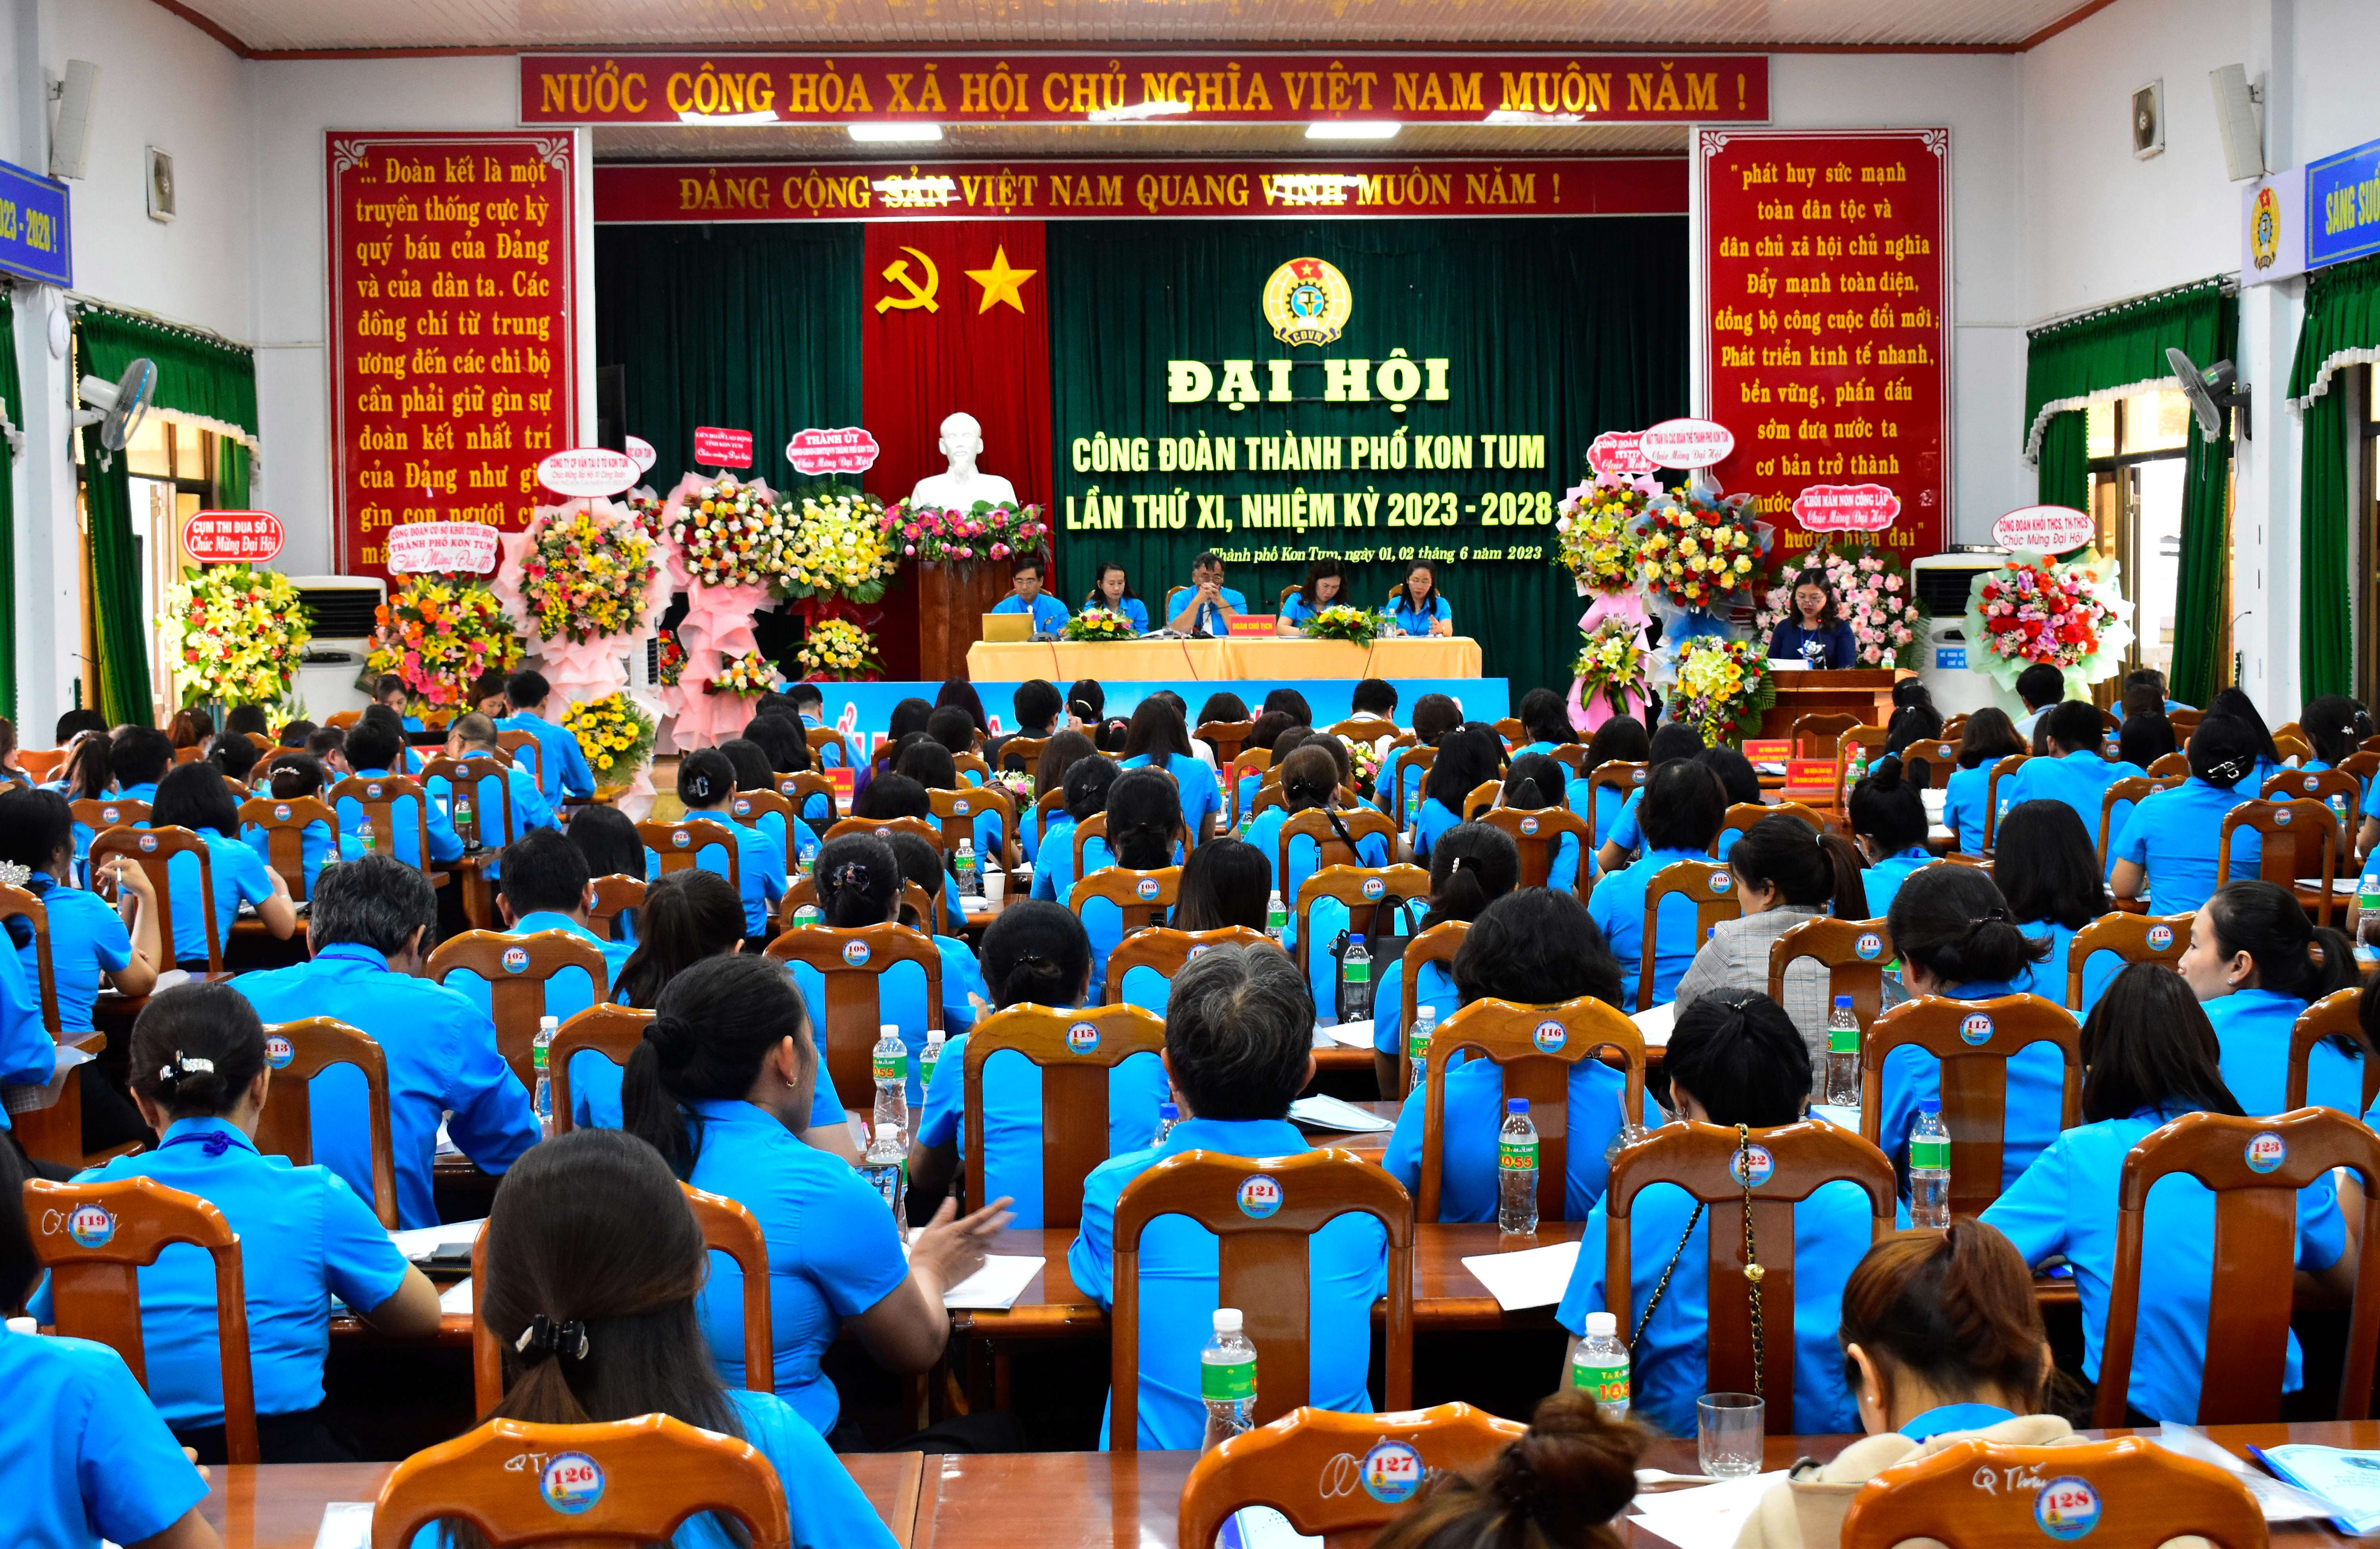 Đại hội Công đoàn thành phố Kon Tum lần thứ XI, nhiệm kỳ 2023-2028